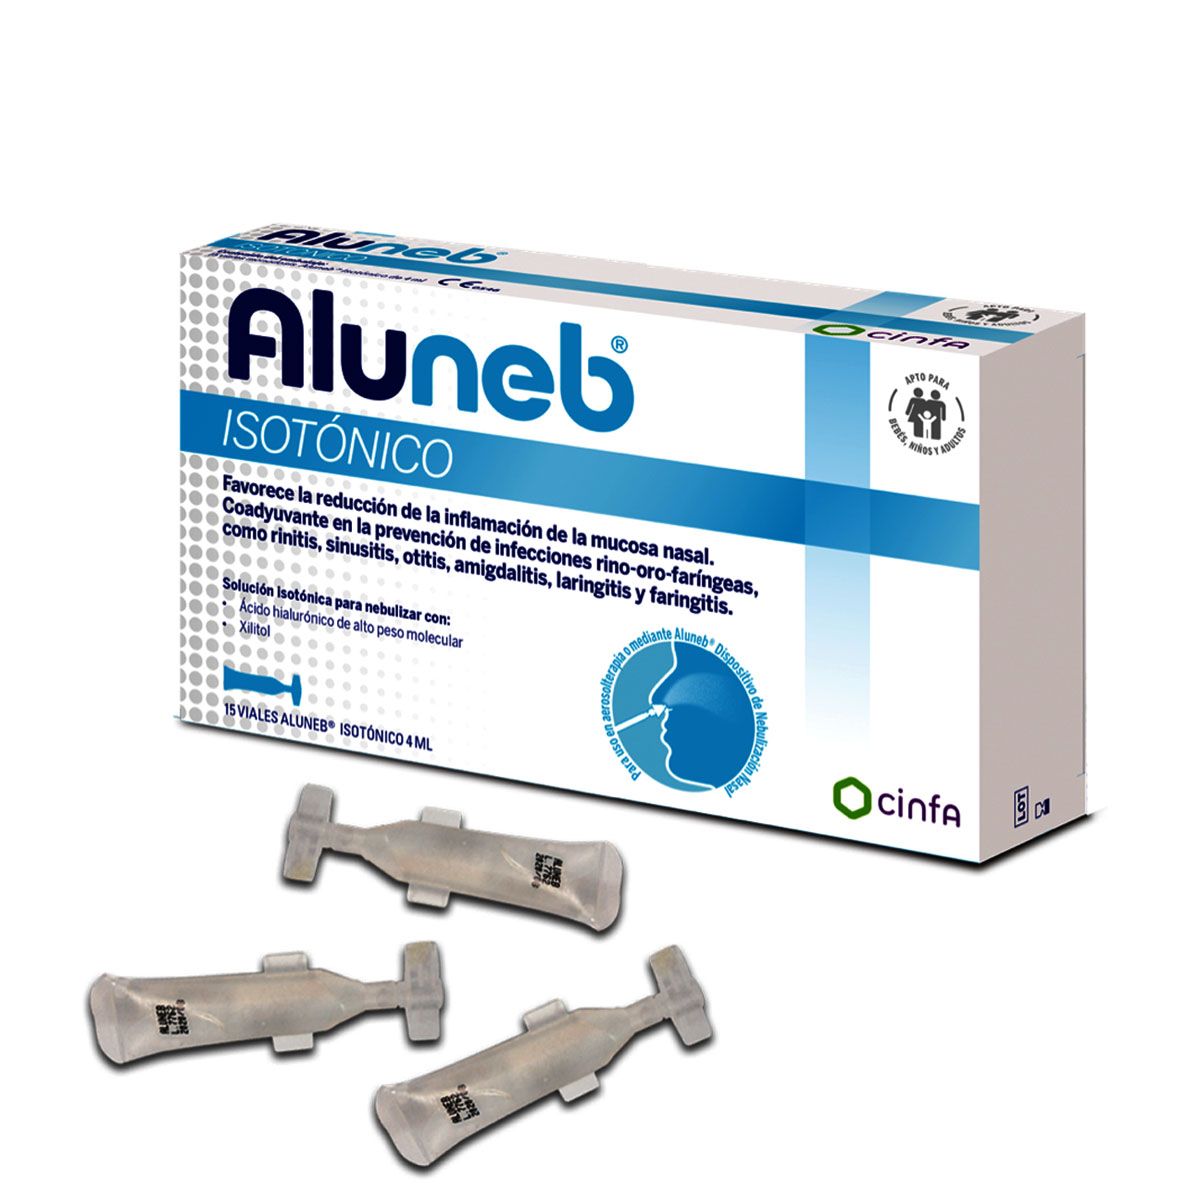 Aluneb Dispositivo Nebulización Nasal